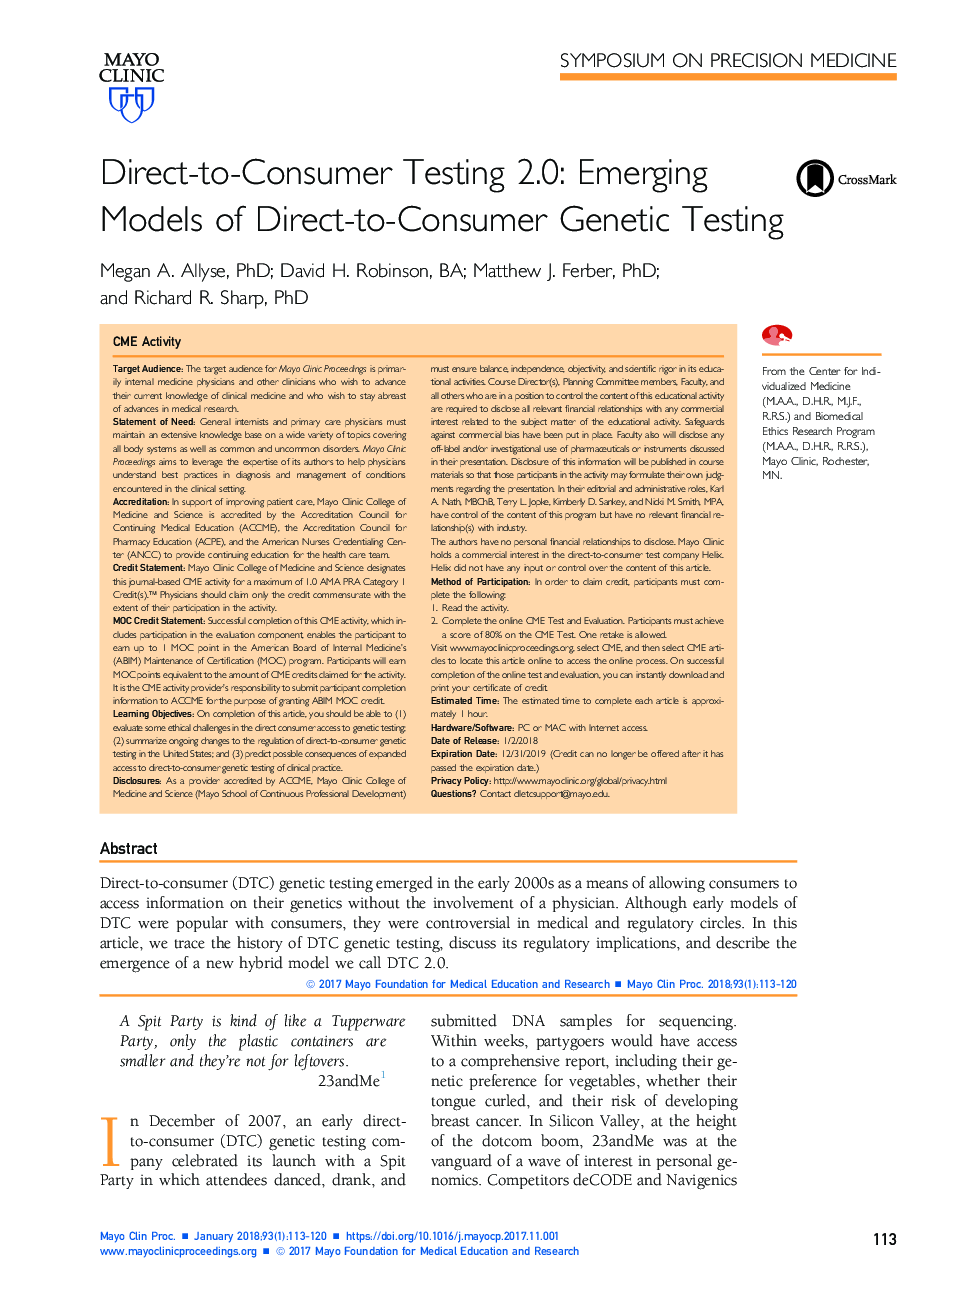 تست مستقیم به مصرف کننده 2.0: مدل های جدید تست ژنتیک مستقیم به مصرف کننده 